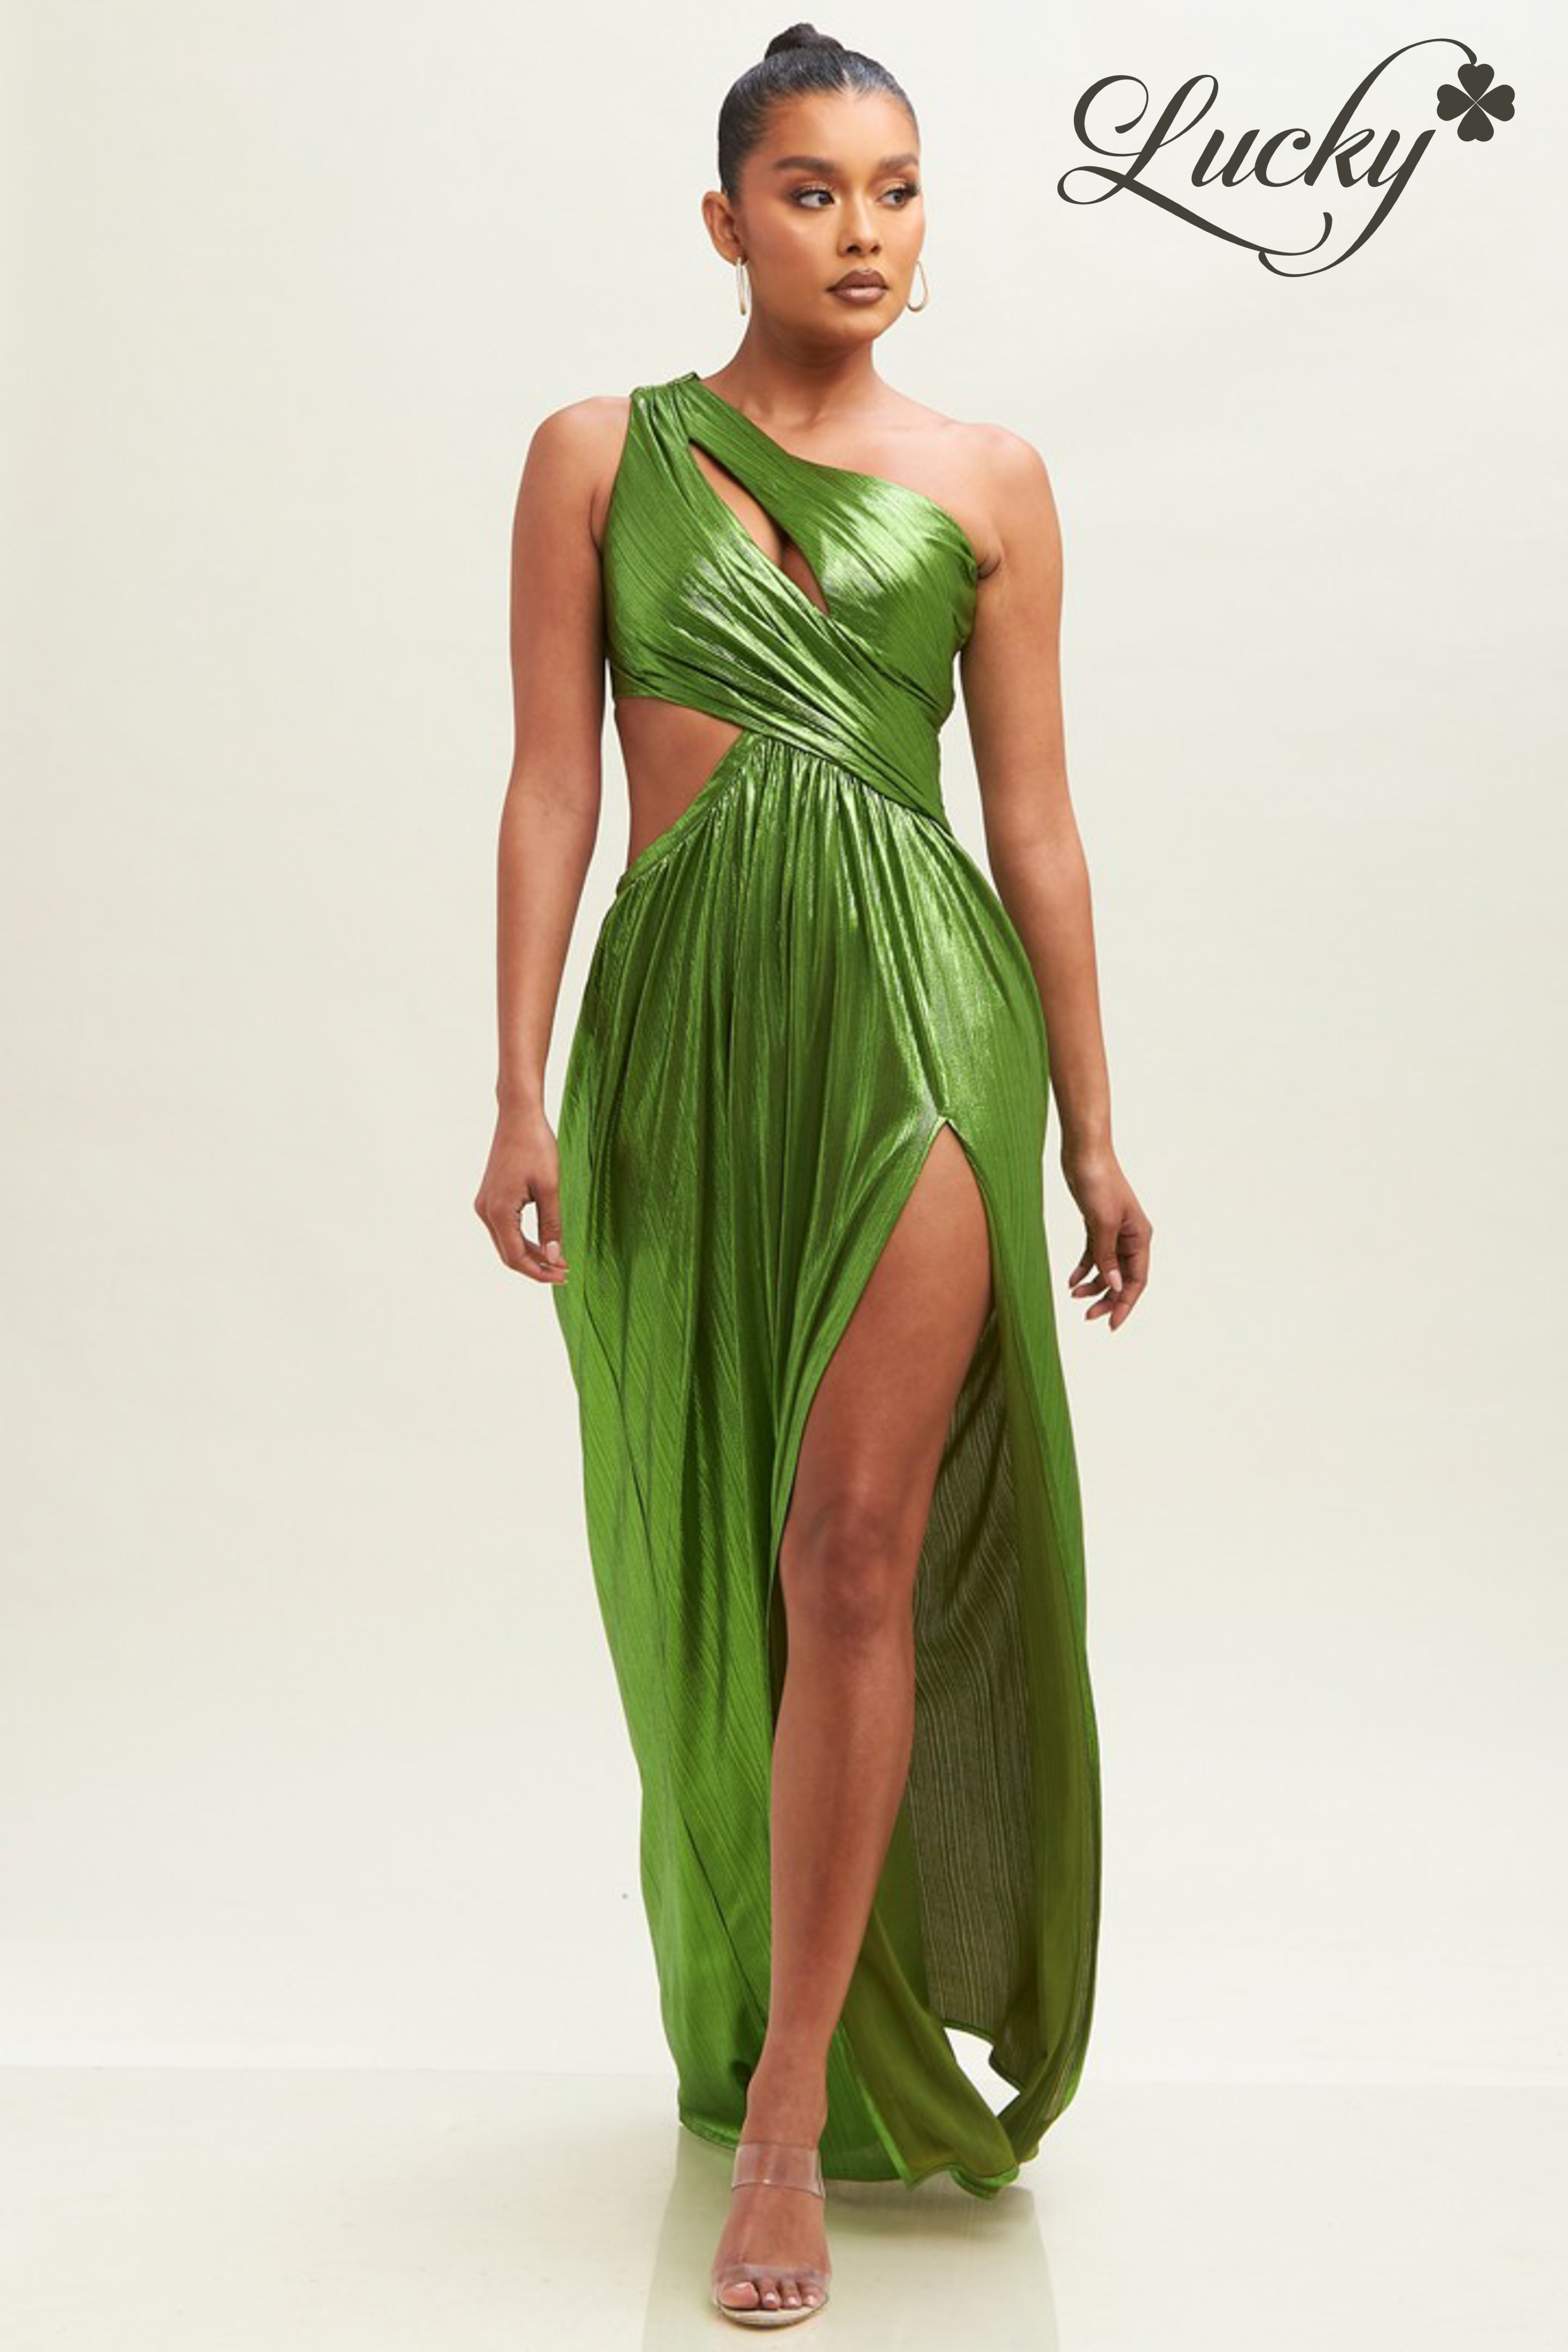 Lucky - Vestido verde oscuro de satin ₡ 140,000  luckyclothingcr.com/products/vestido-verde-oscuro-de-satin-mq3